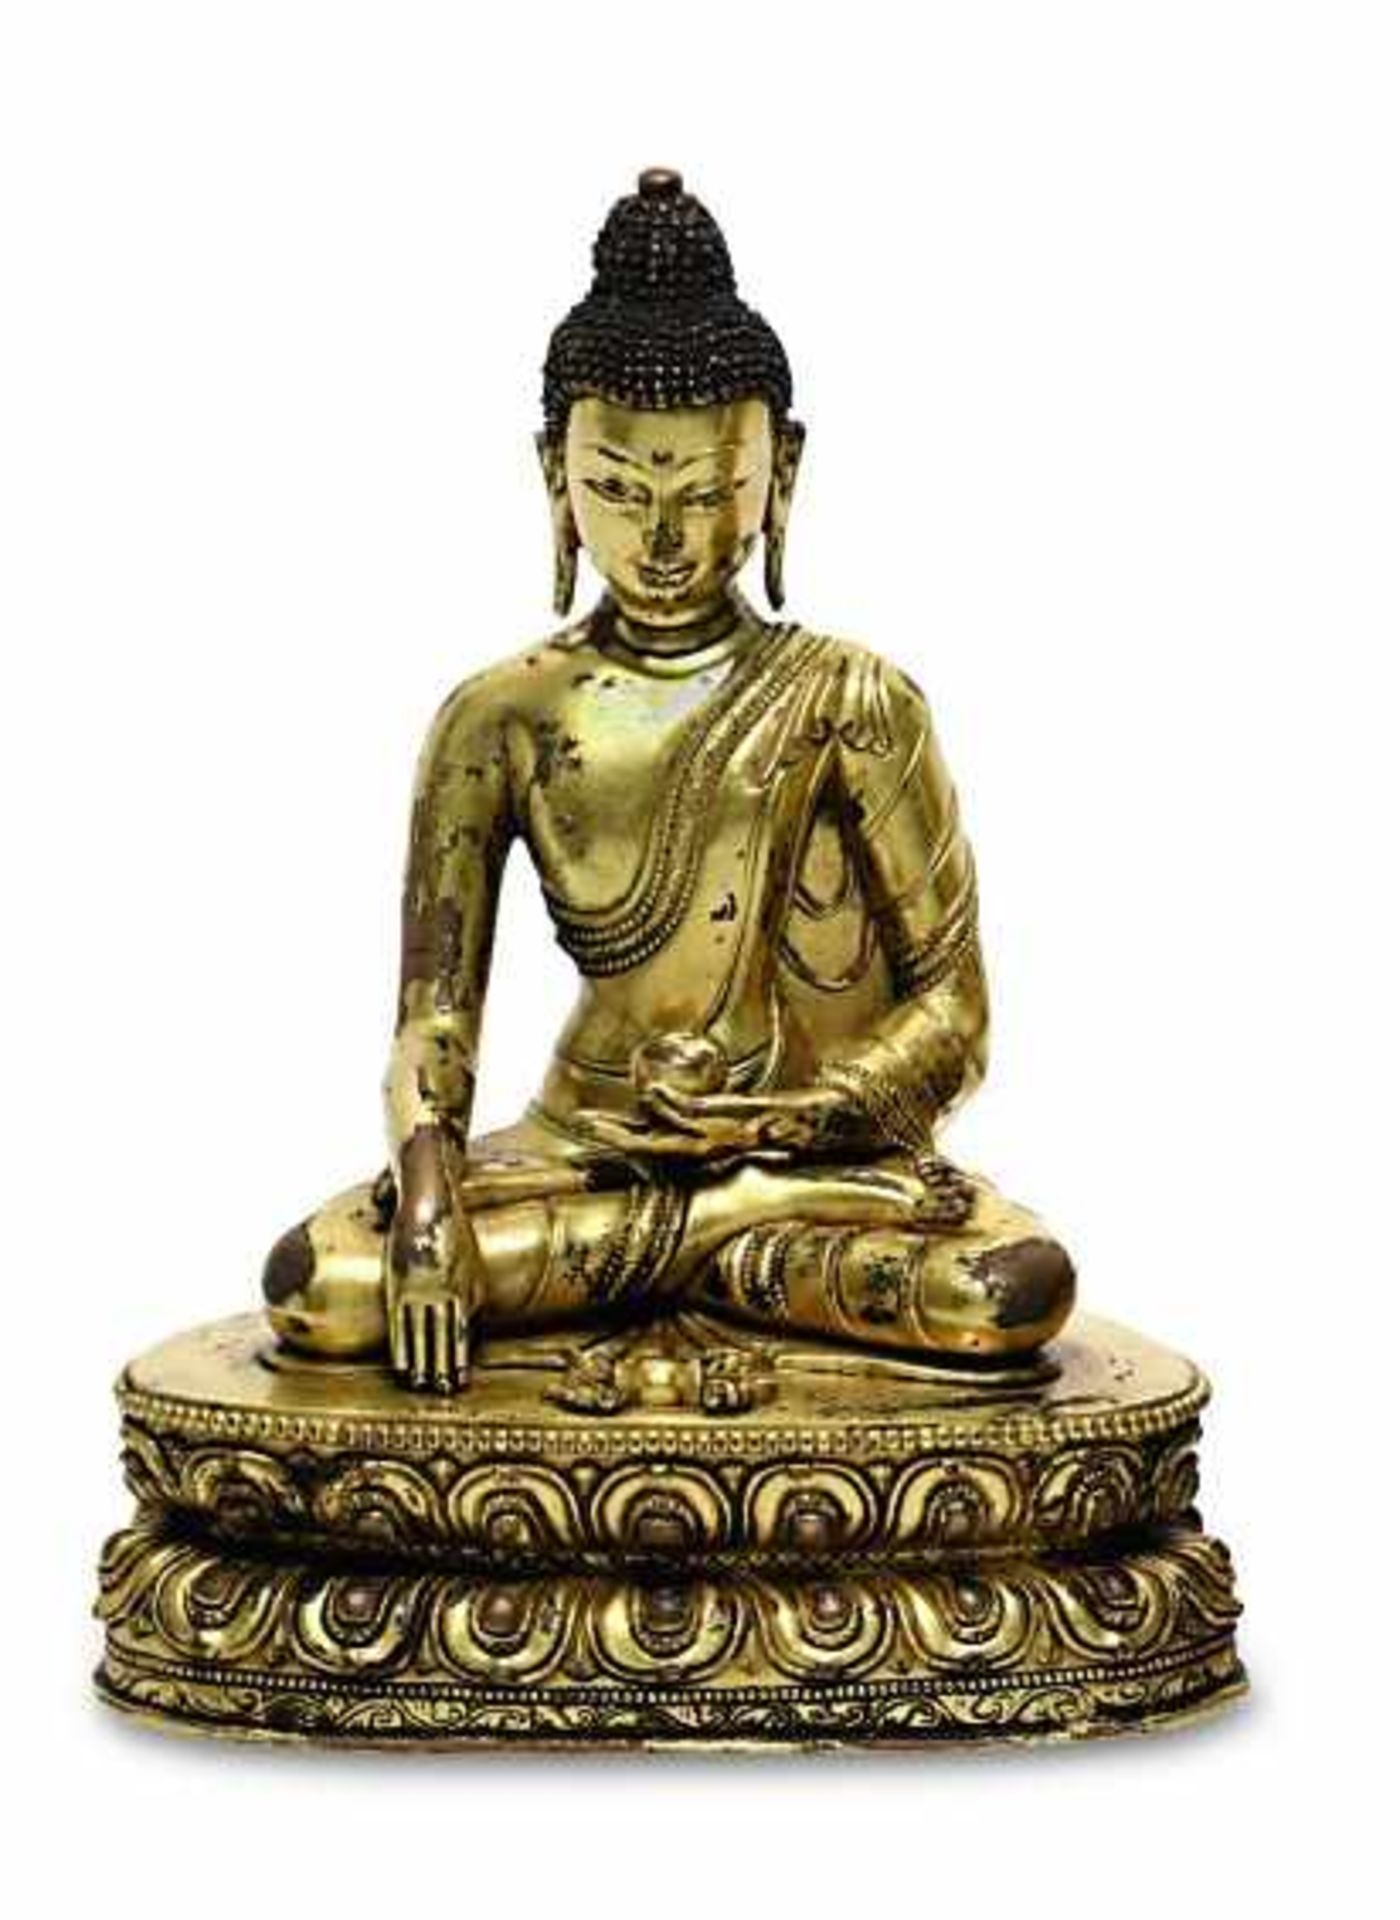 Buddha ShakyamuniTibet (oder sinotibetisch) Kupferbronze, vergoldet, die Haare mit Resten blauer